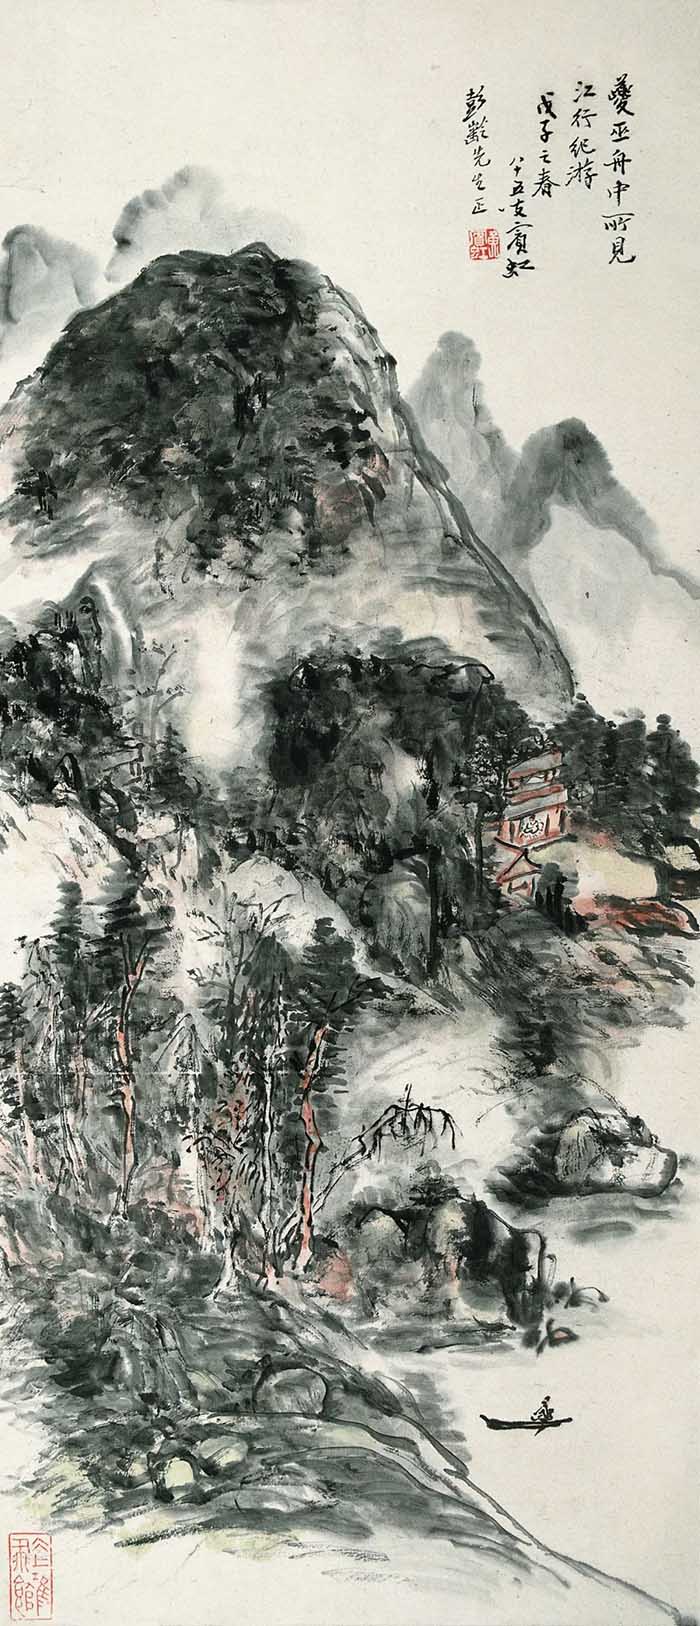  视道如花：齐白石京圈作品展 京津地区画家的一次集体亮相